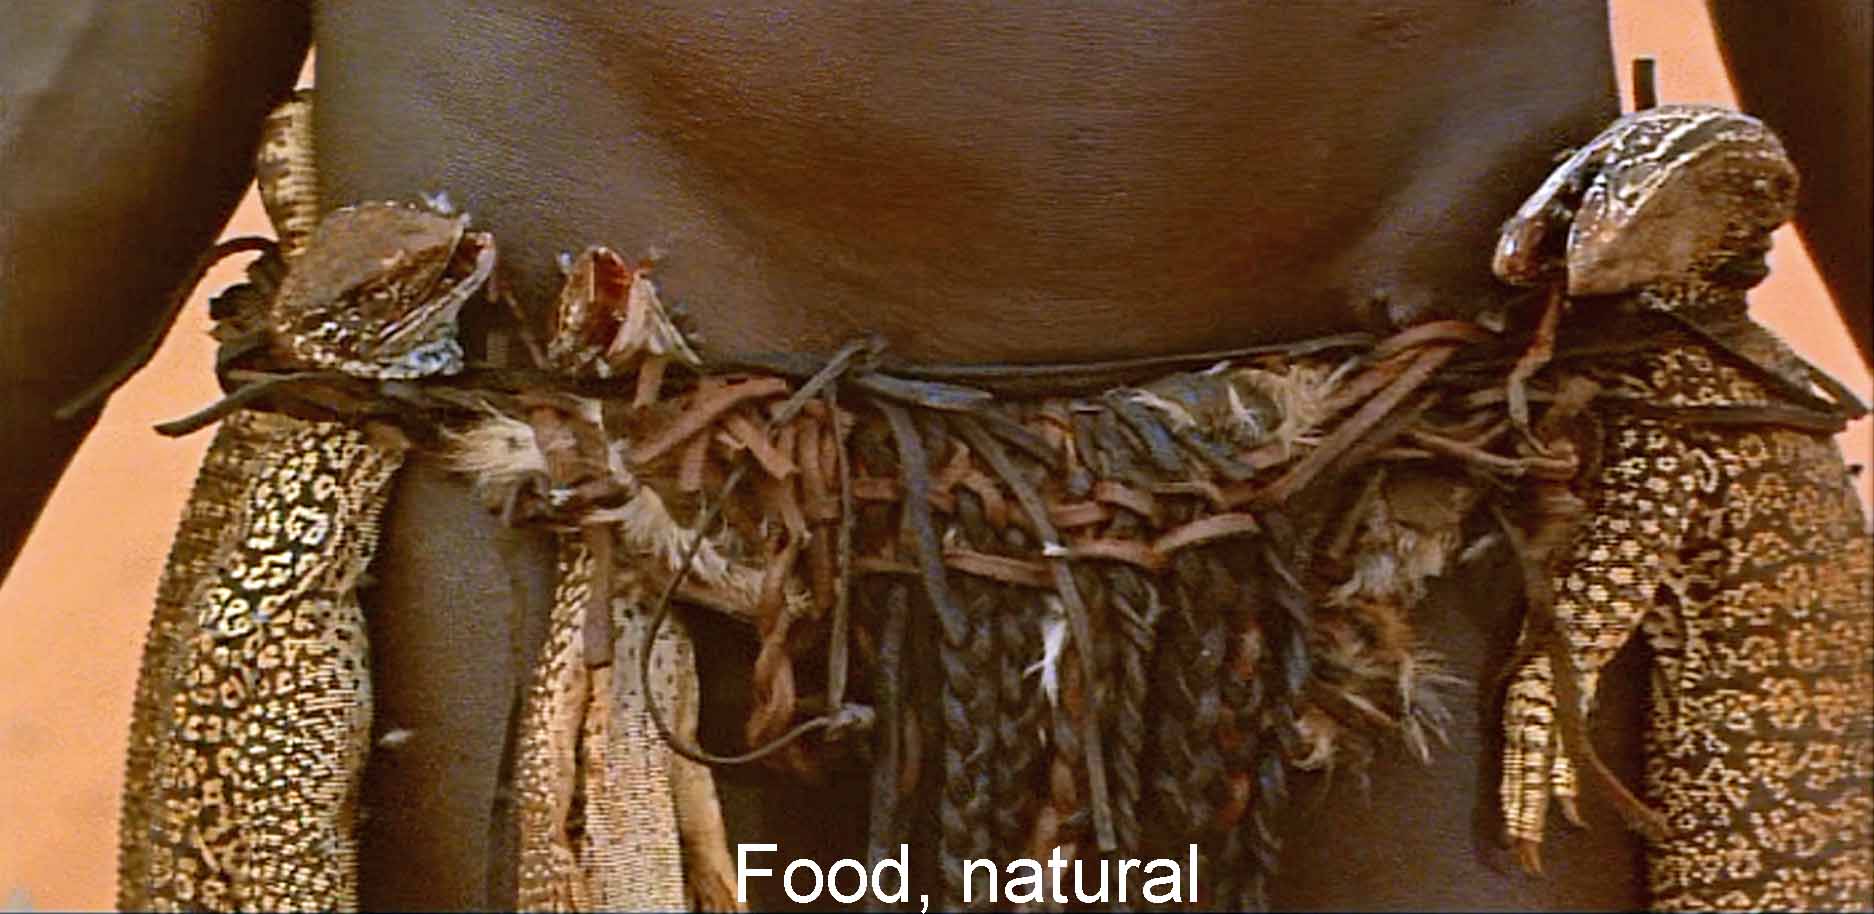 Food, natural